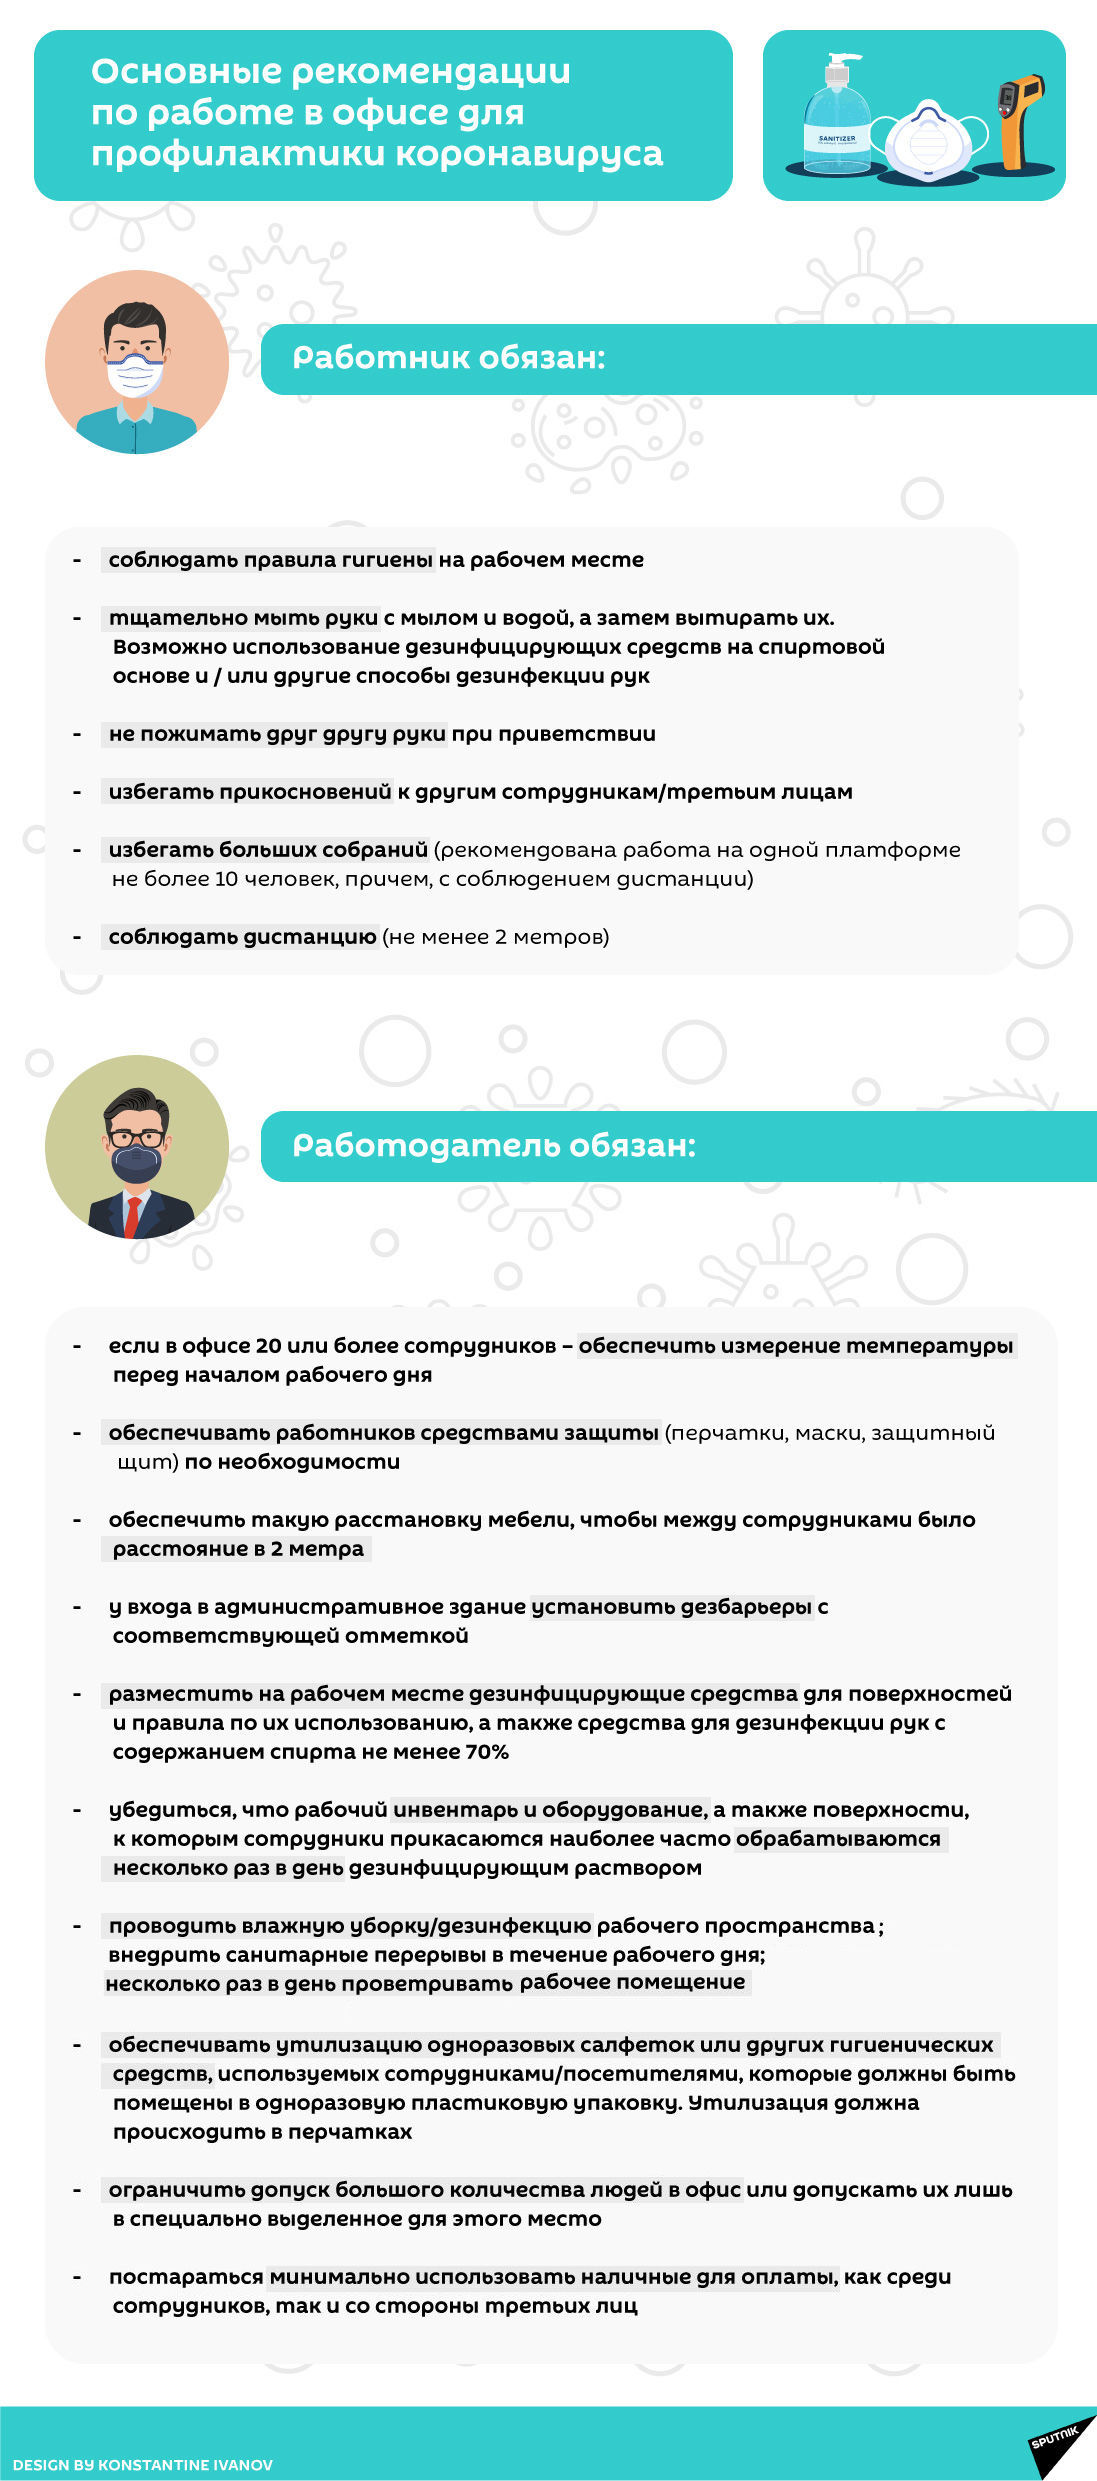 Инфографика: Правила поведения в офисе при коронавирусе - Sputnik Азербайджан